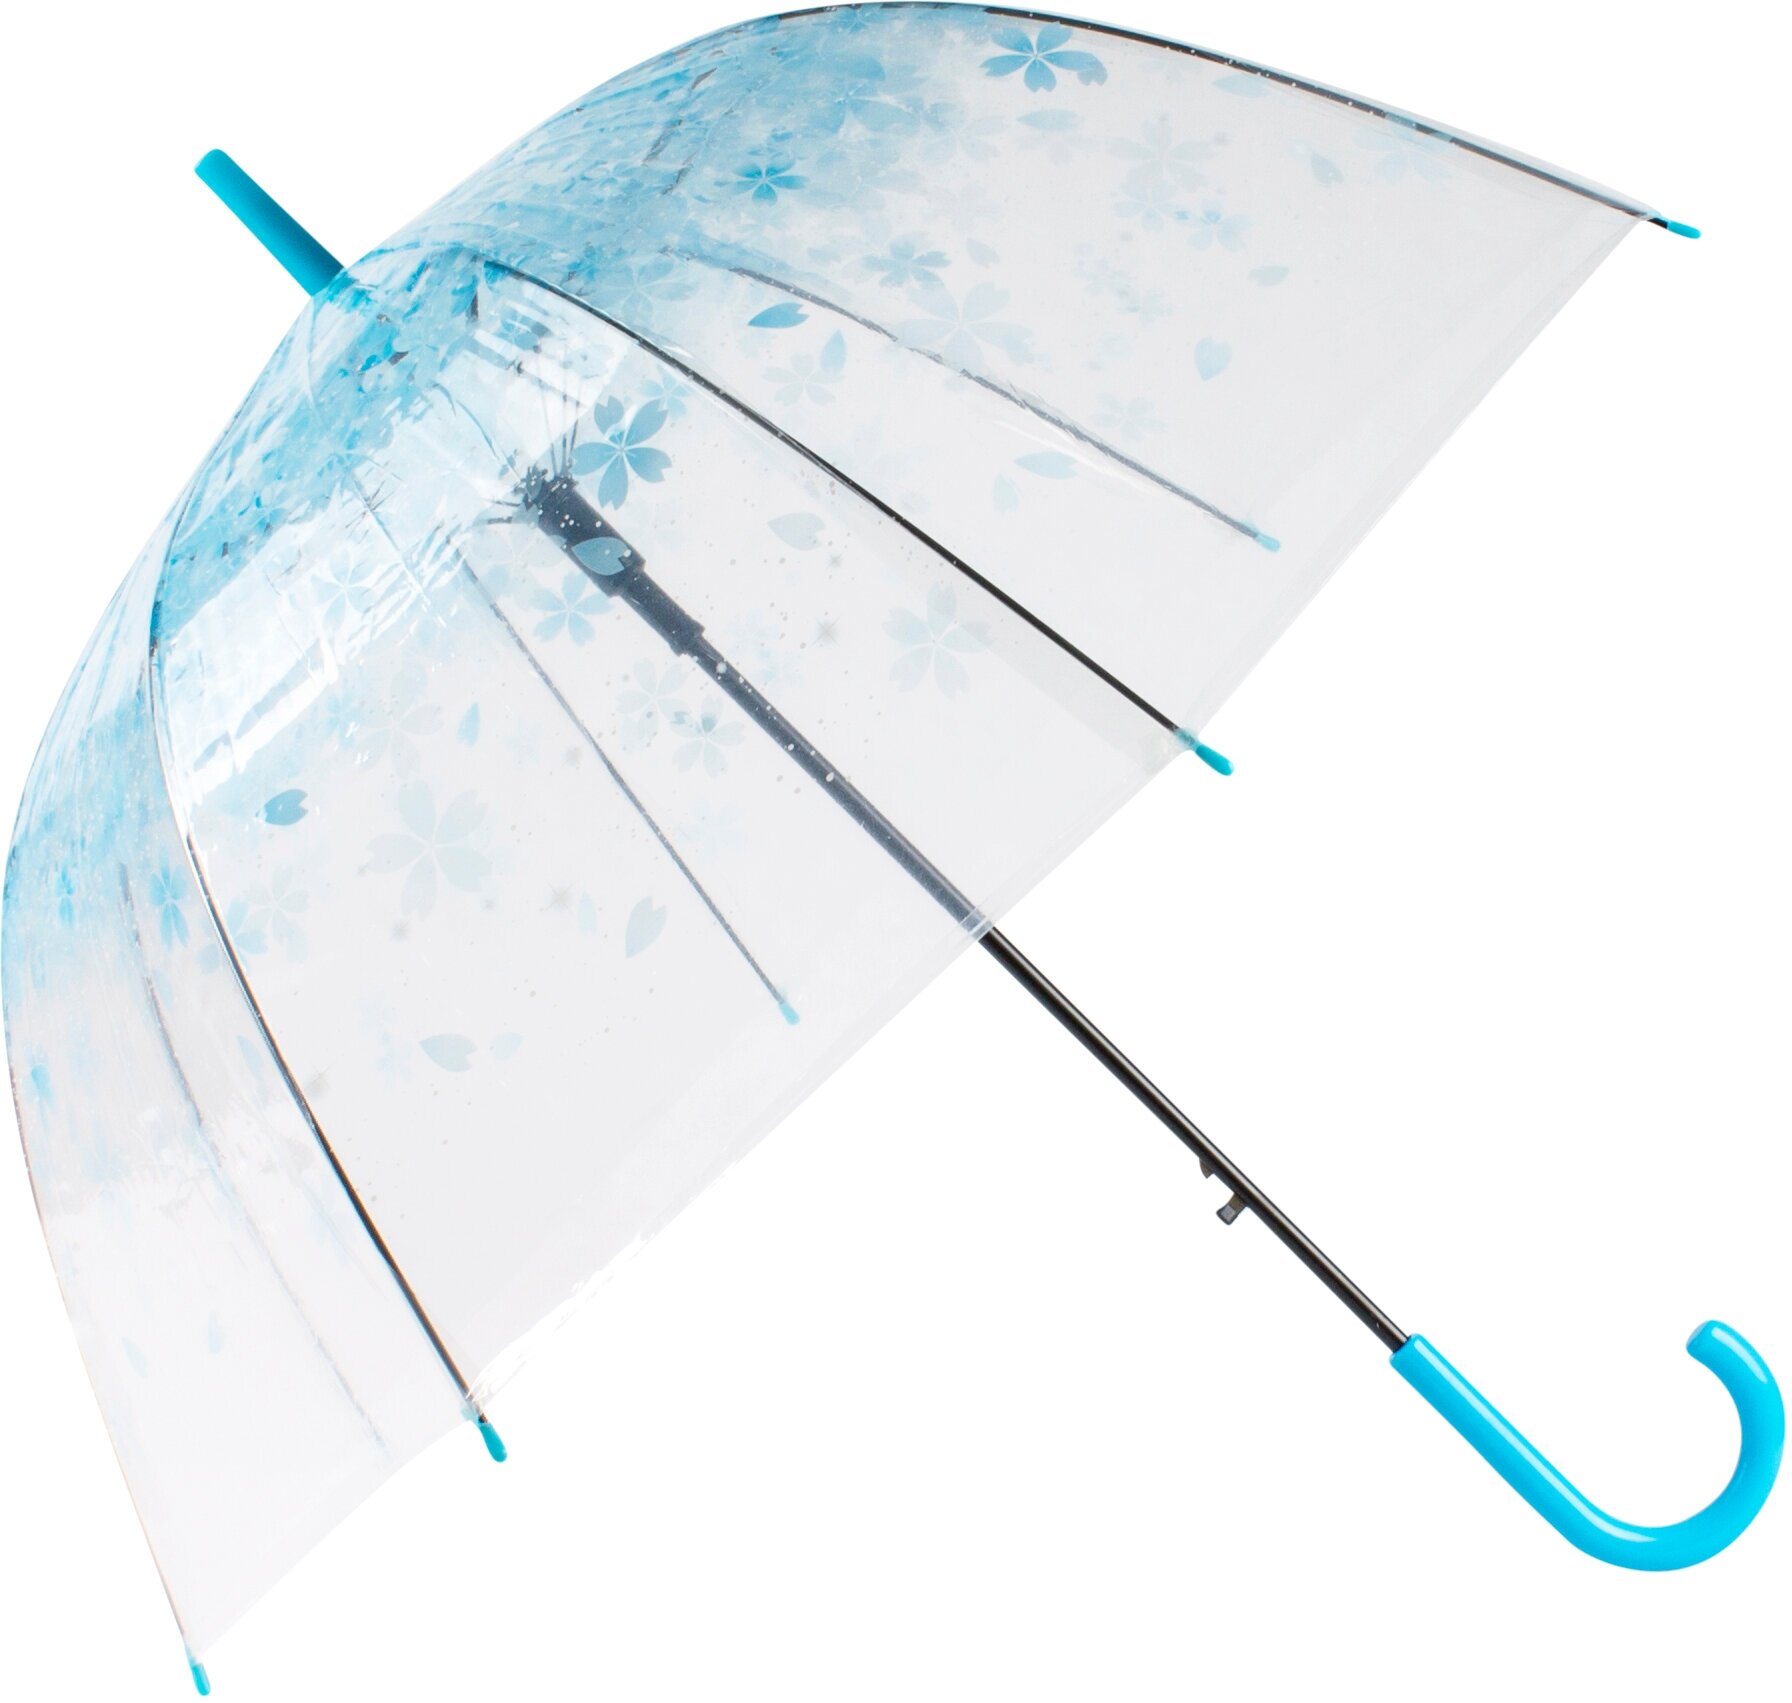 Зонт Цветы малый синие Эврика, зонт-трость прозрачный, женский, унисекс, 8 спиц, диаметр купола 80 см